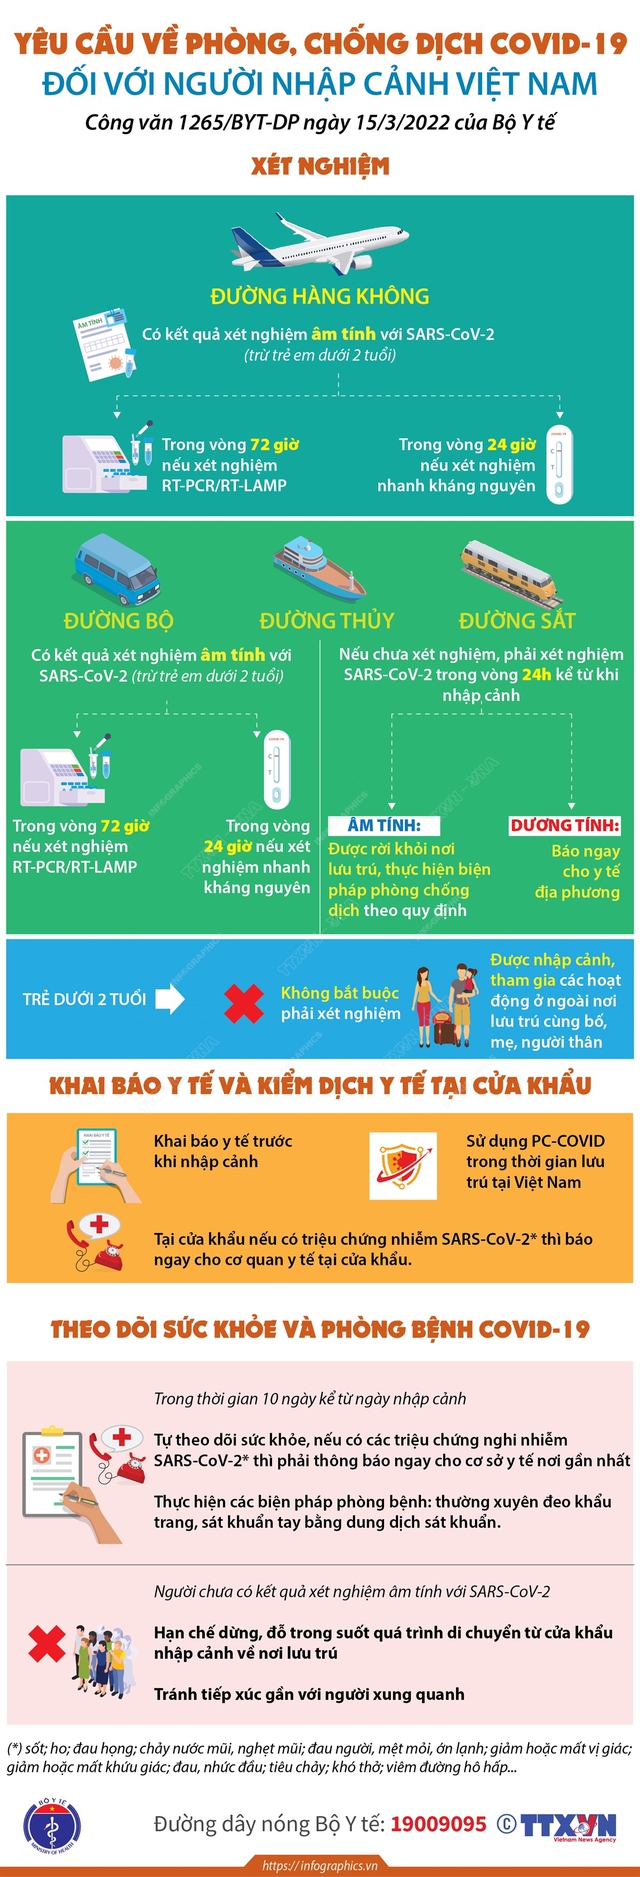 Infographic: Người nhập cảnh vào Việt Nam được yêu cầu xét nghiệm COVID-19 như thế nào? - Ảnh 1.